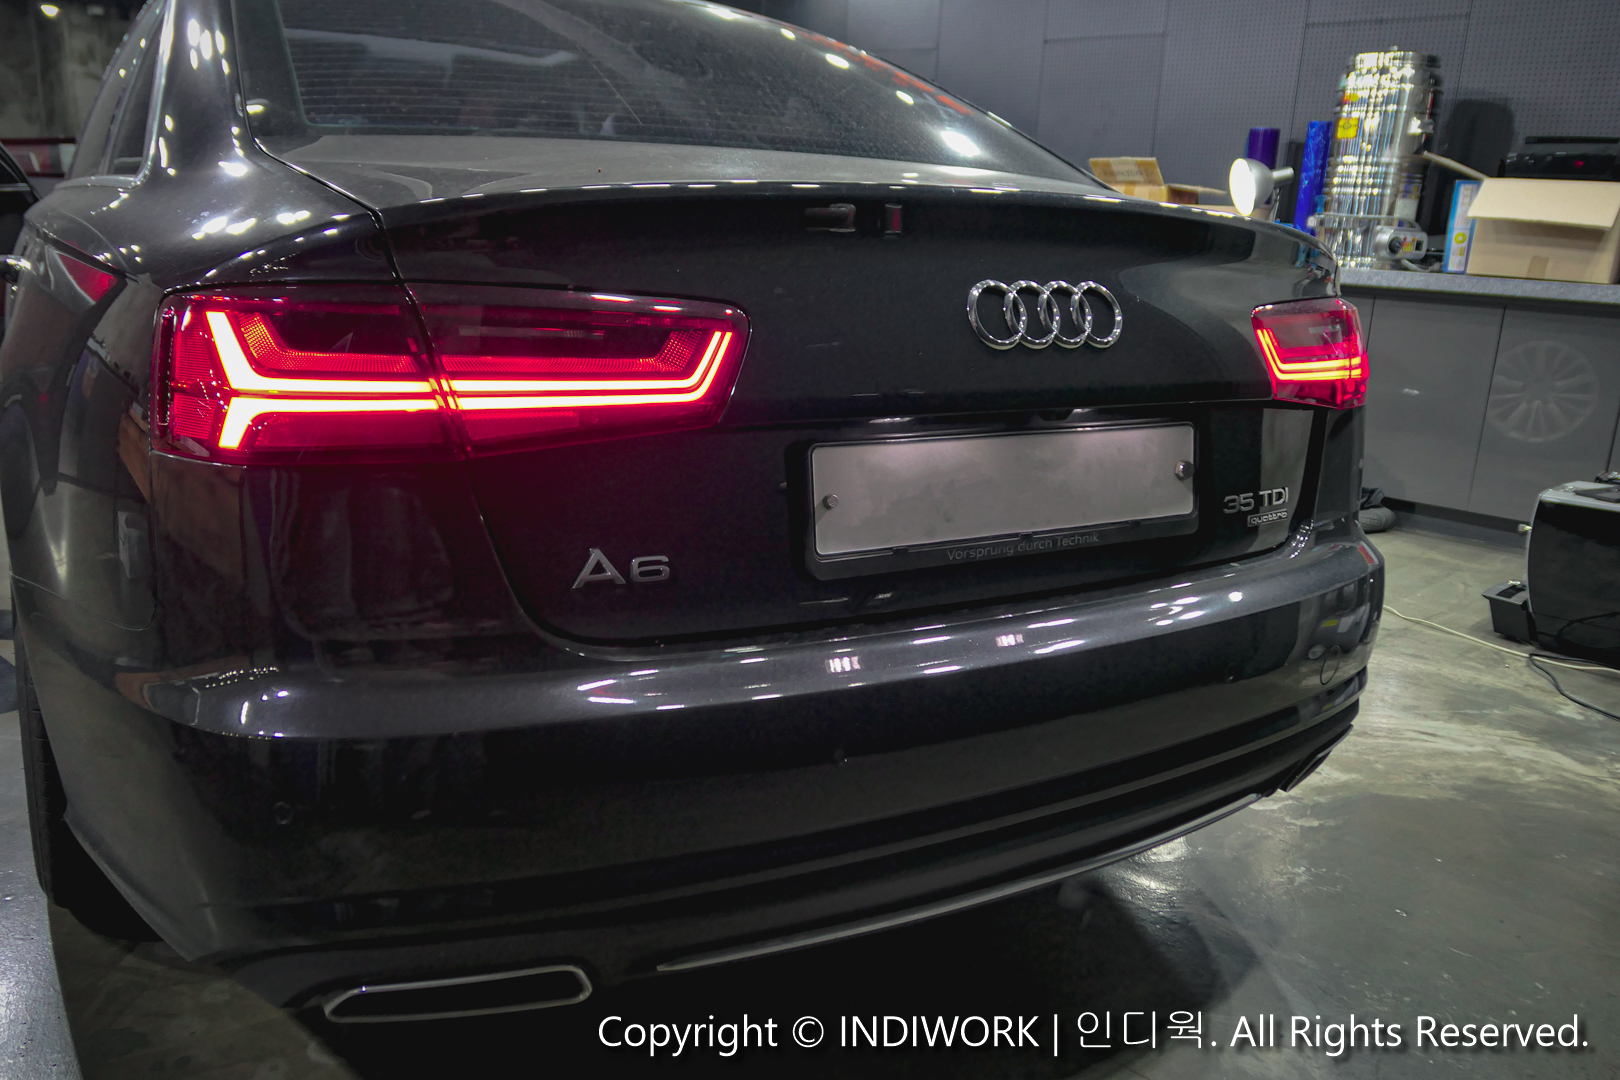 2015 Audi A6 exterior